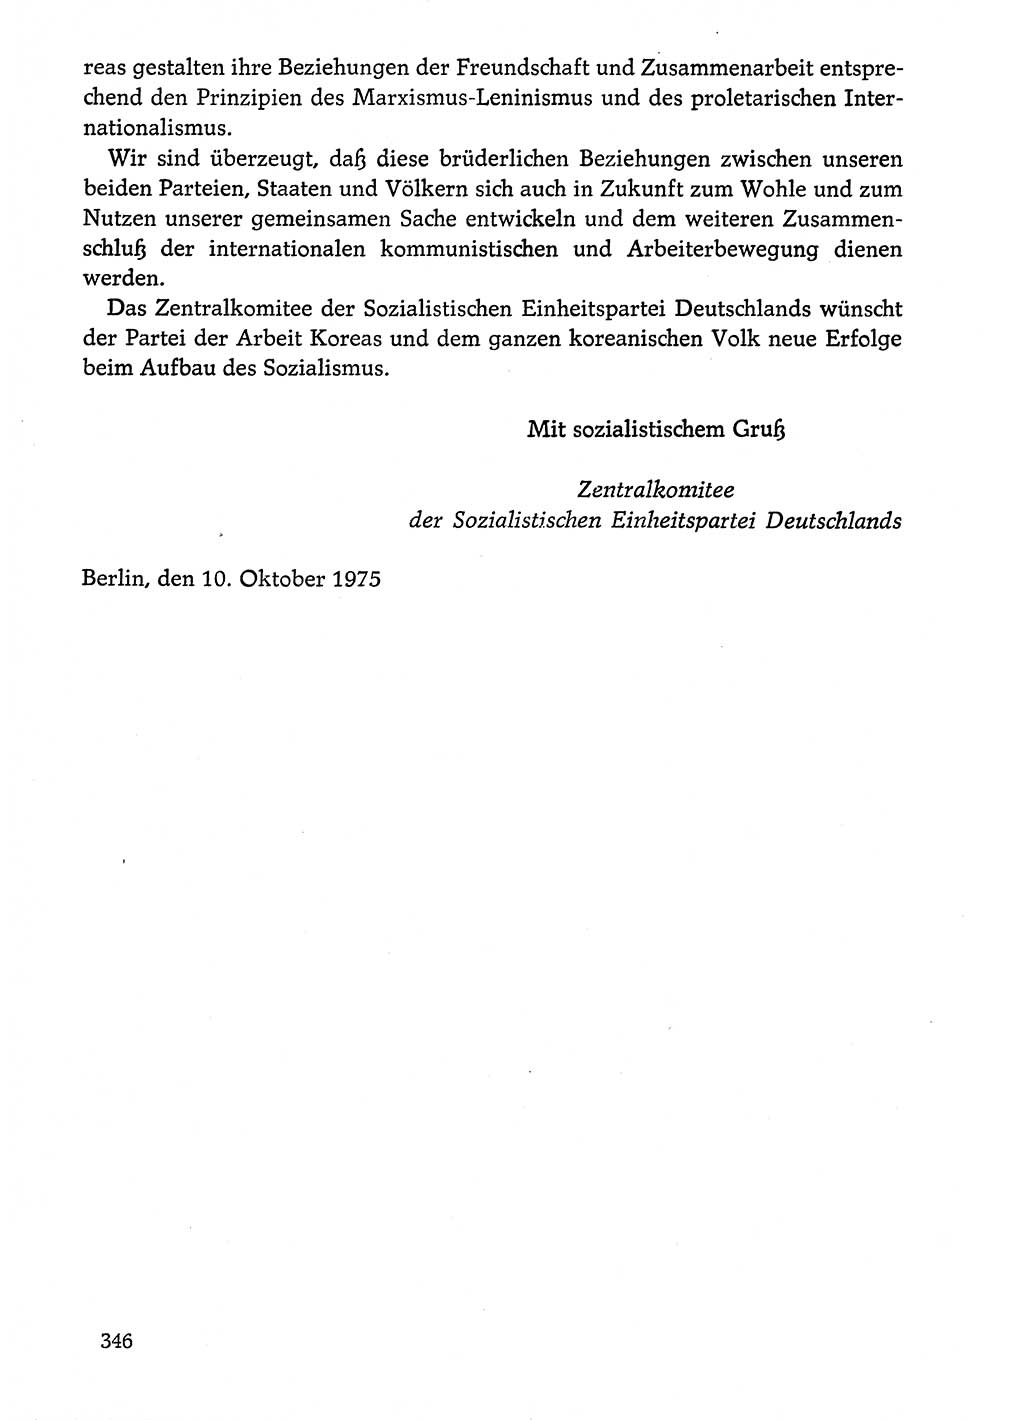 Dokumente der Sozialistischen Einheitspartei Deutschlands (SED) [Deutsche Demokratische Republik (DDR)] 1974-1975, Seite 346 (Dok. SED DDR 1978, Bd. ⅩⅤ, S. 346)